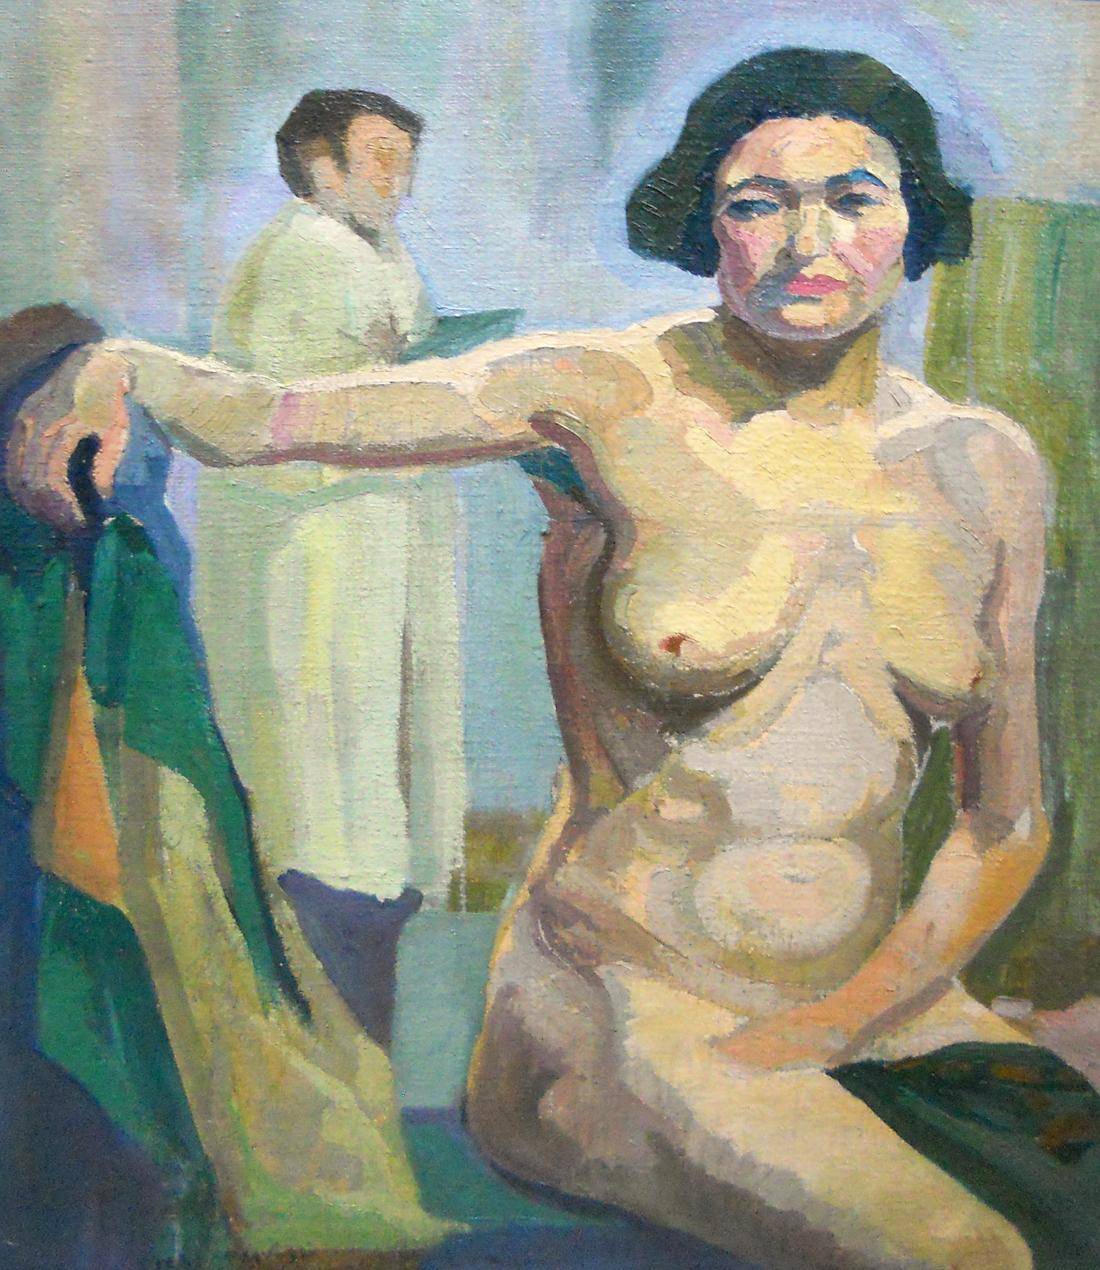 Desnudo. Carlos Prevosti (1896-1955). Óleo sobre tela.  95 x 95 cm. Nº inv. 5282.